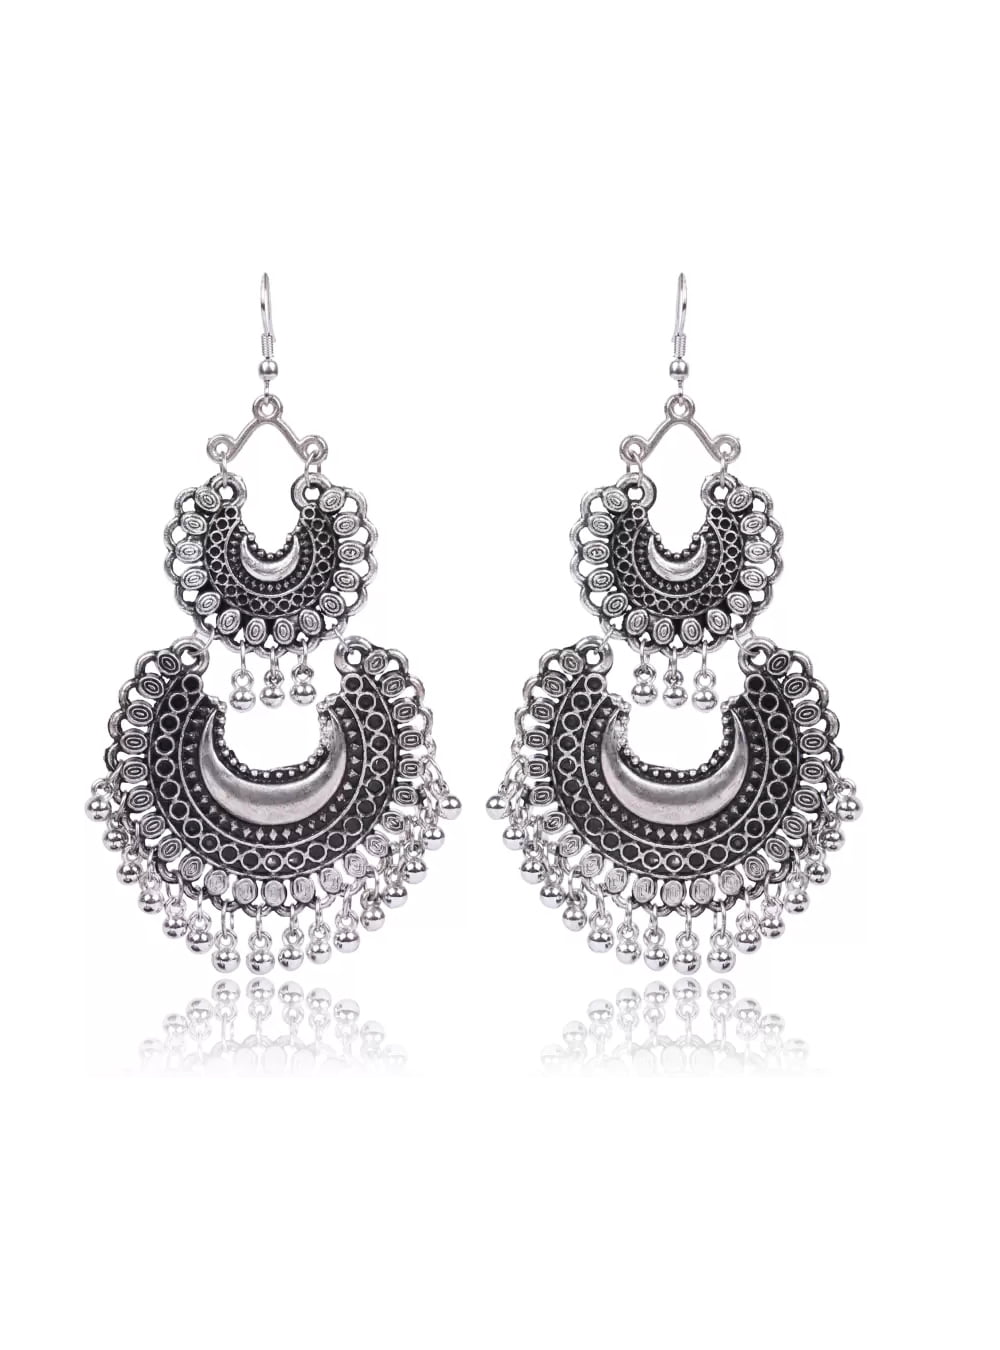 buy-2-level-half-moon-jhumka-earrings-online-nesy-lifestyle